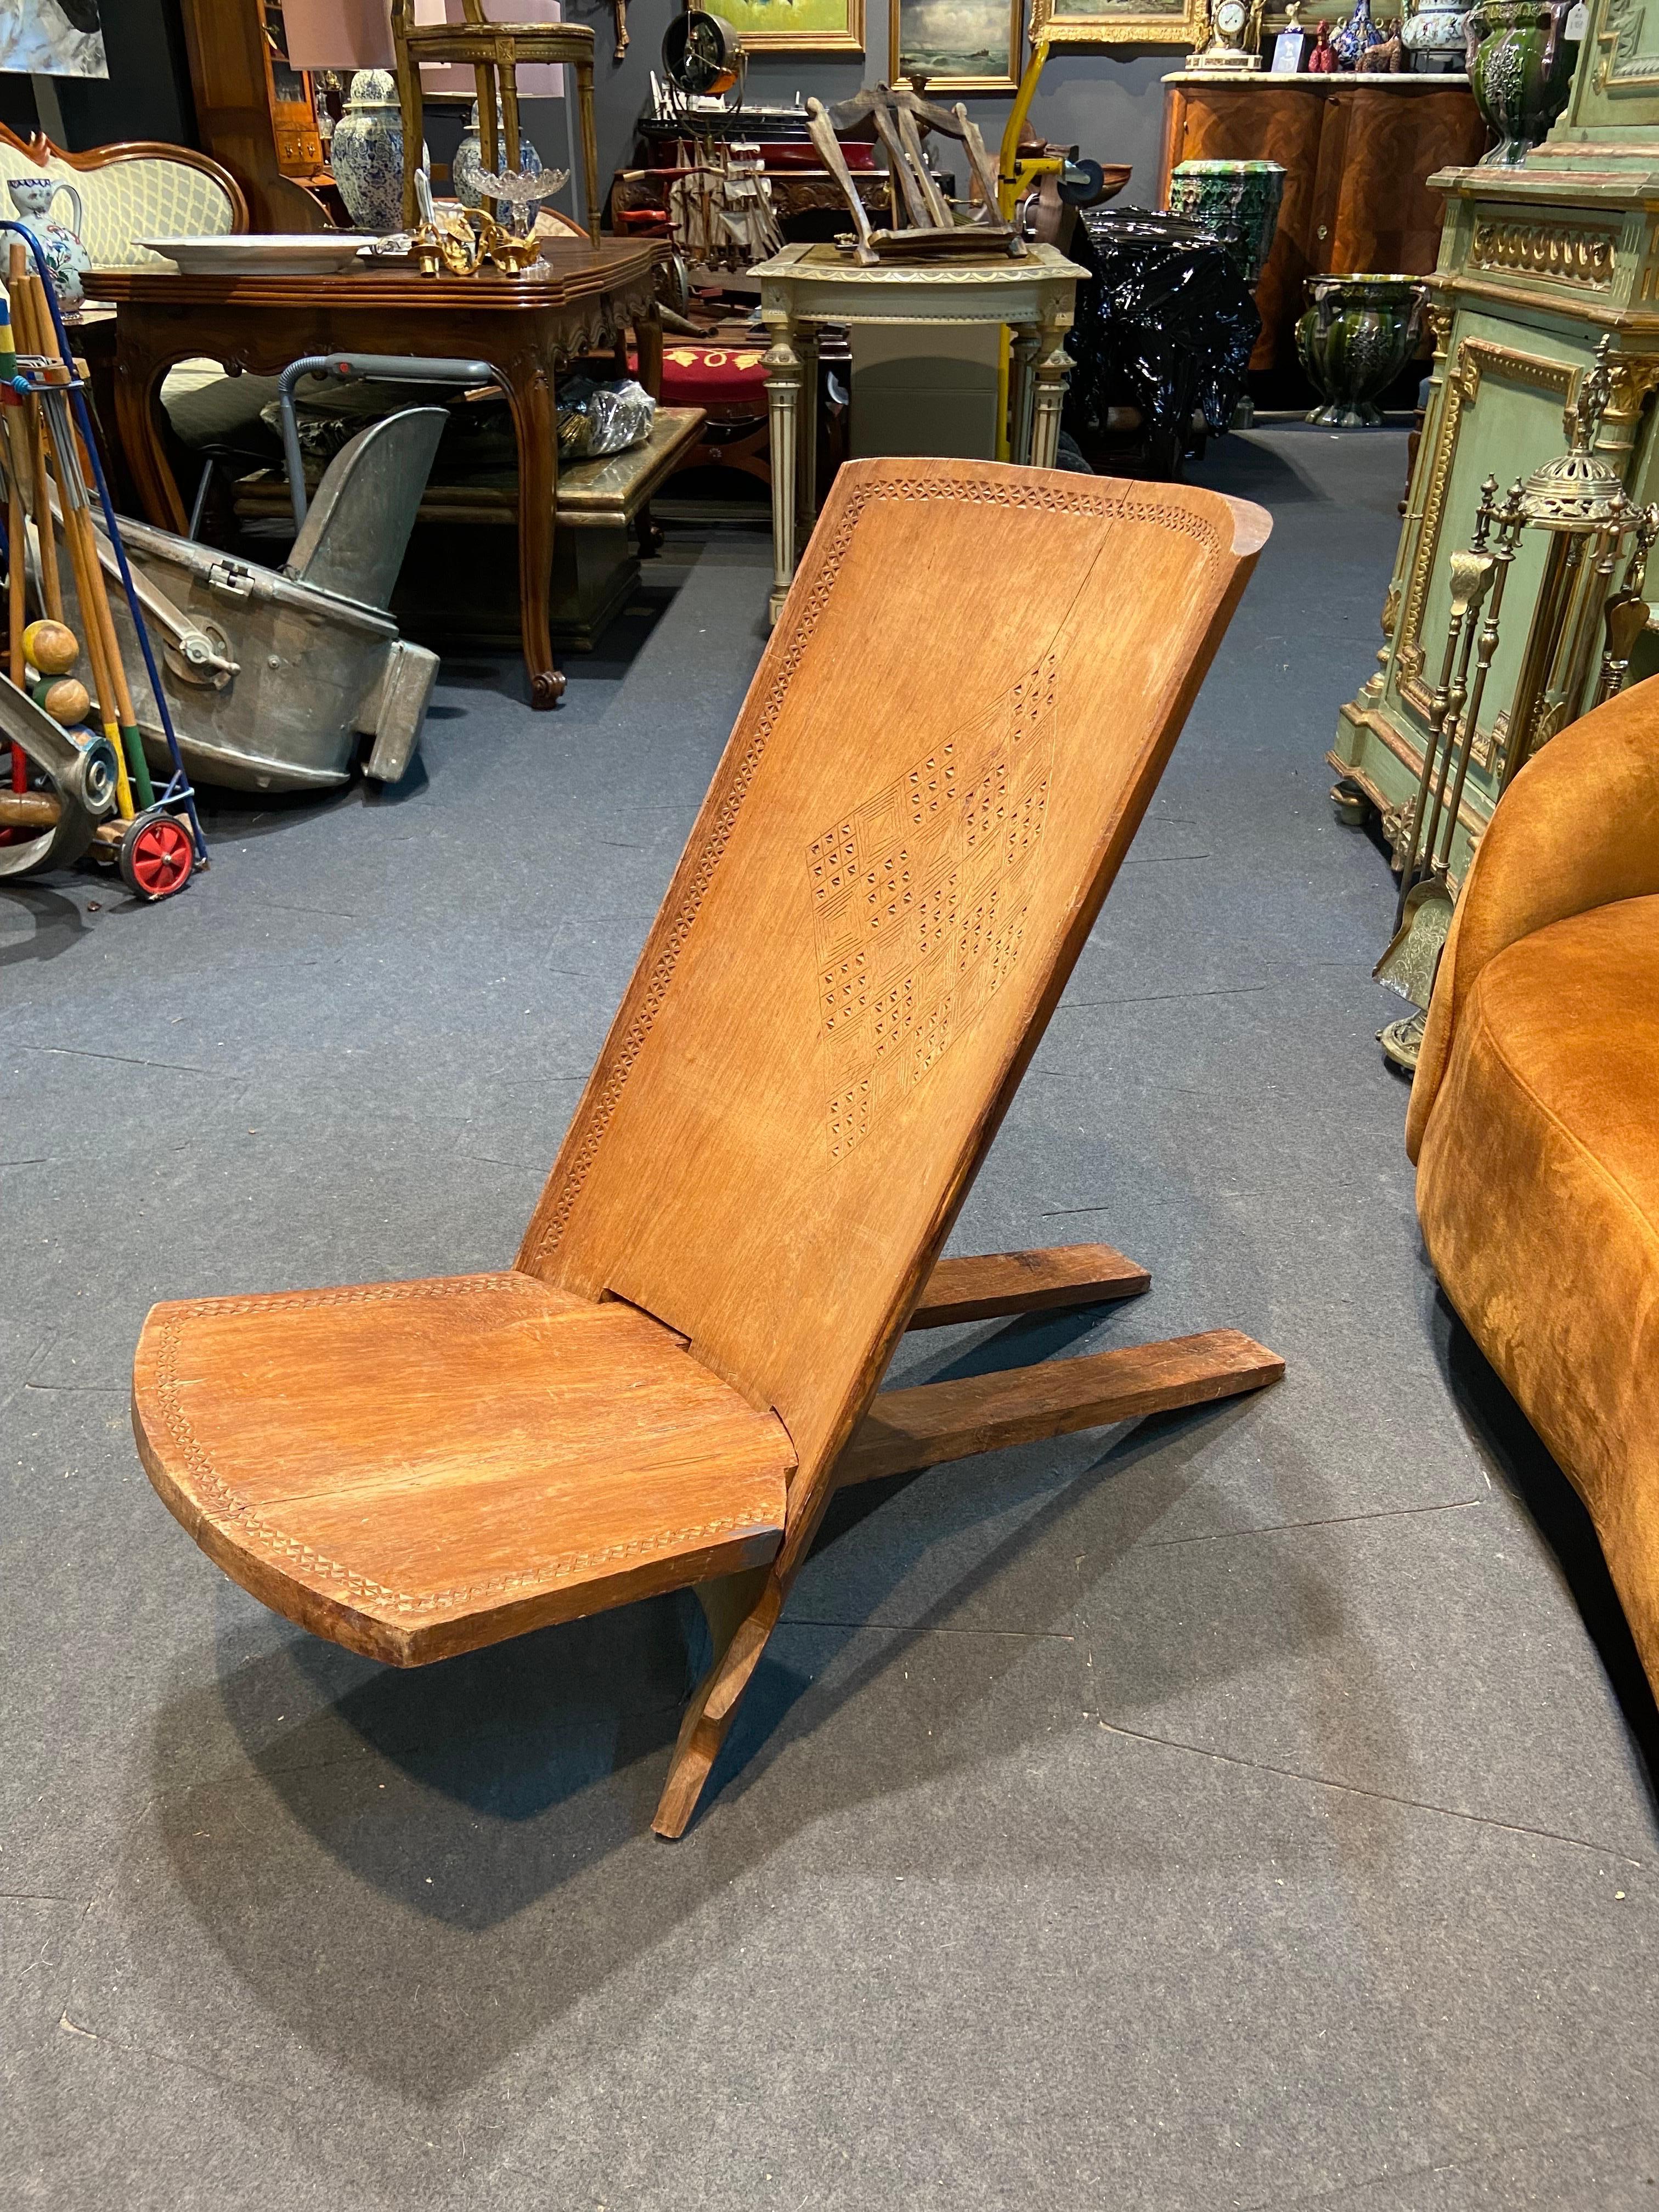 Dieser klappbare Stuhl ist aus Massivholz gefertigt und kann leicht in zwei Teile zerlegt werden. Das Modell ist als 